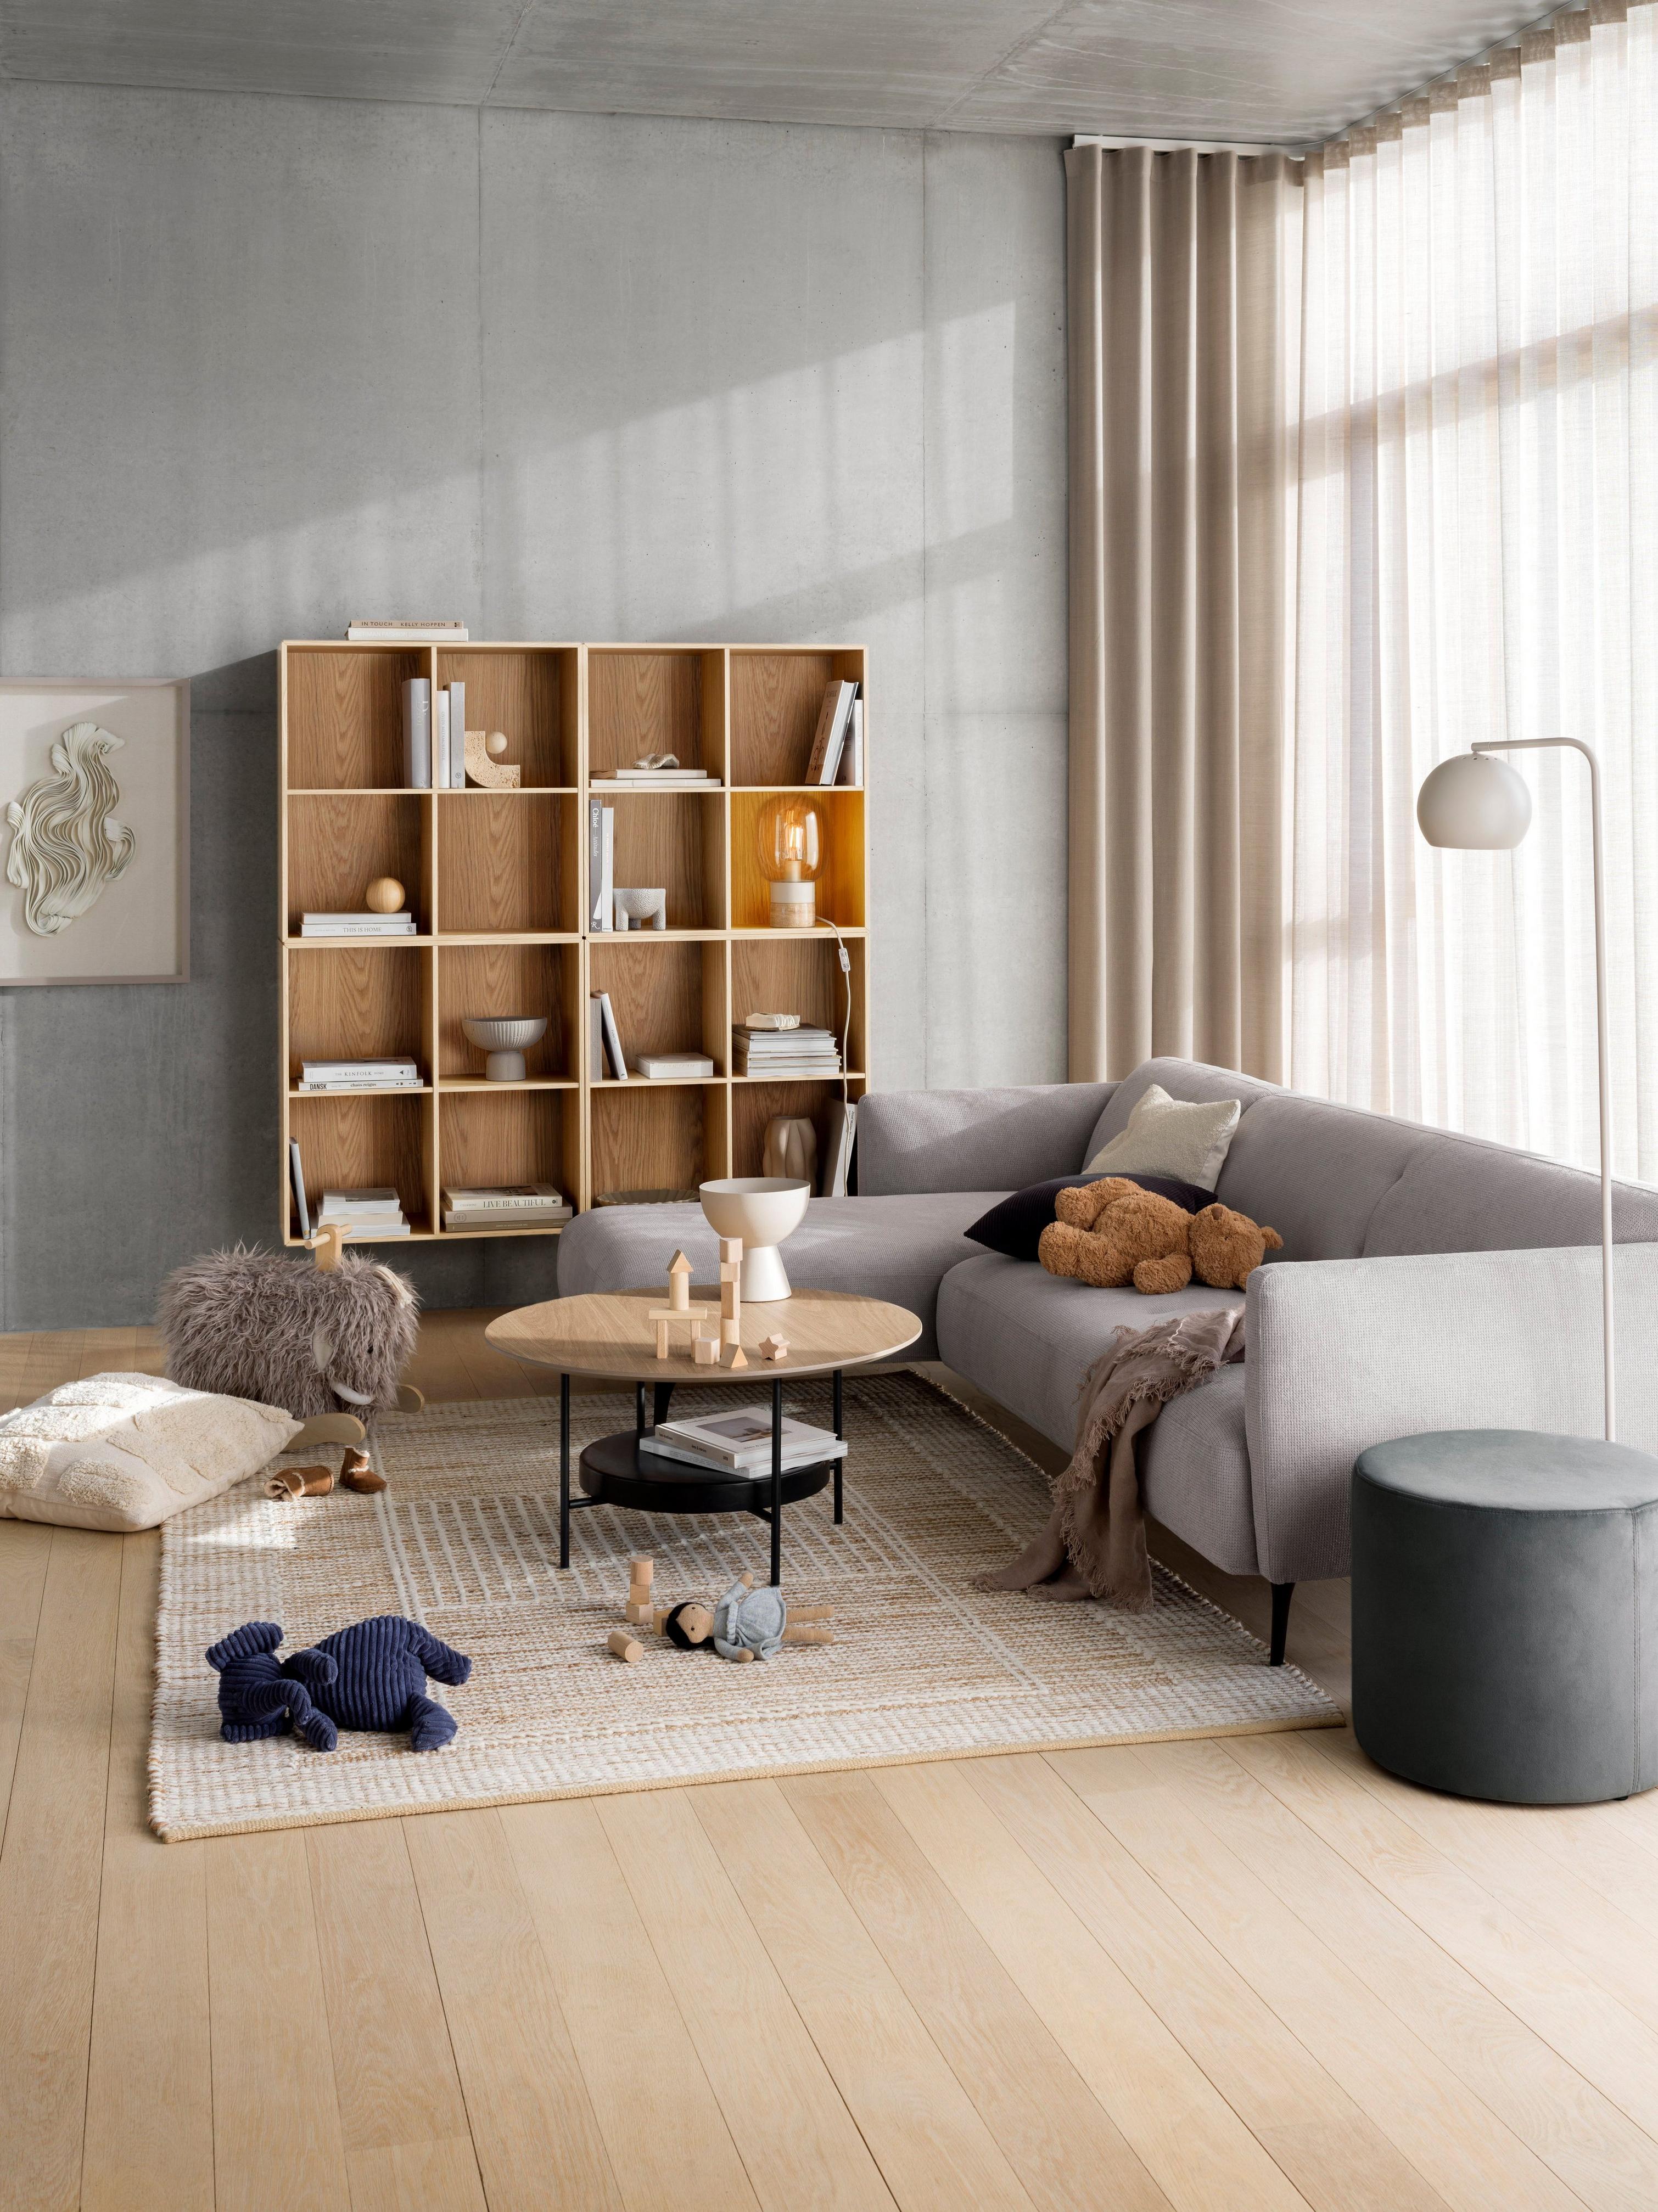 具躺椅的 Moderna 沙發搭配 Madrid 咖啡桌和 Como 書櫃。